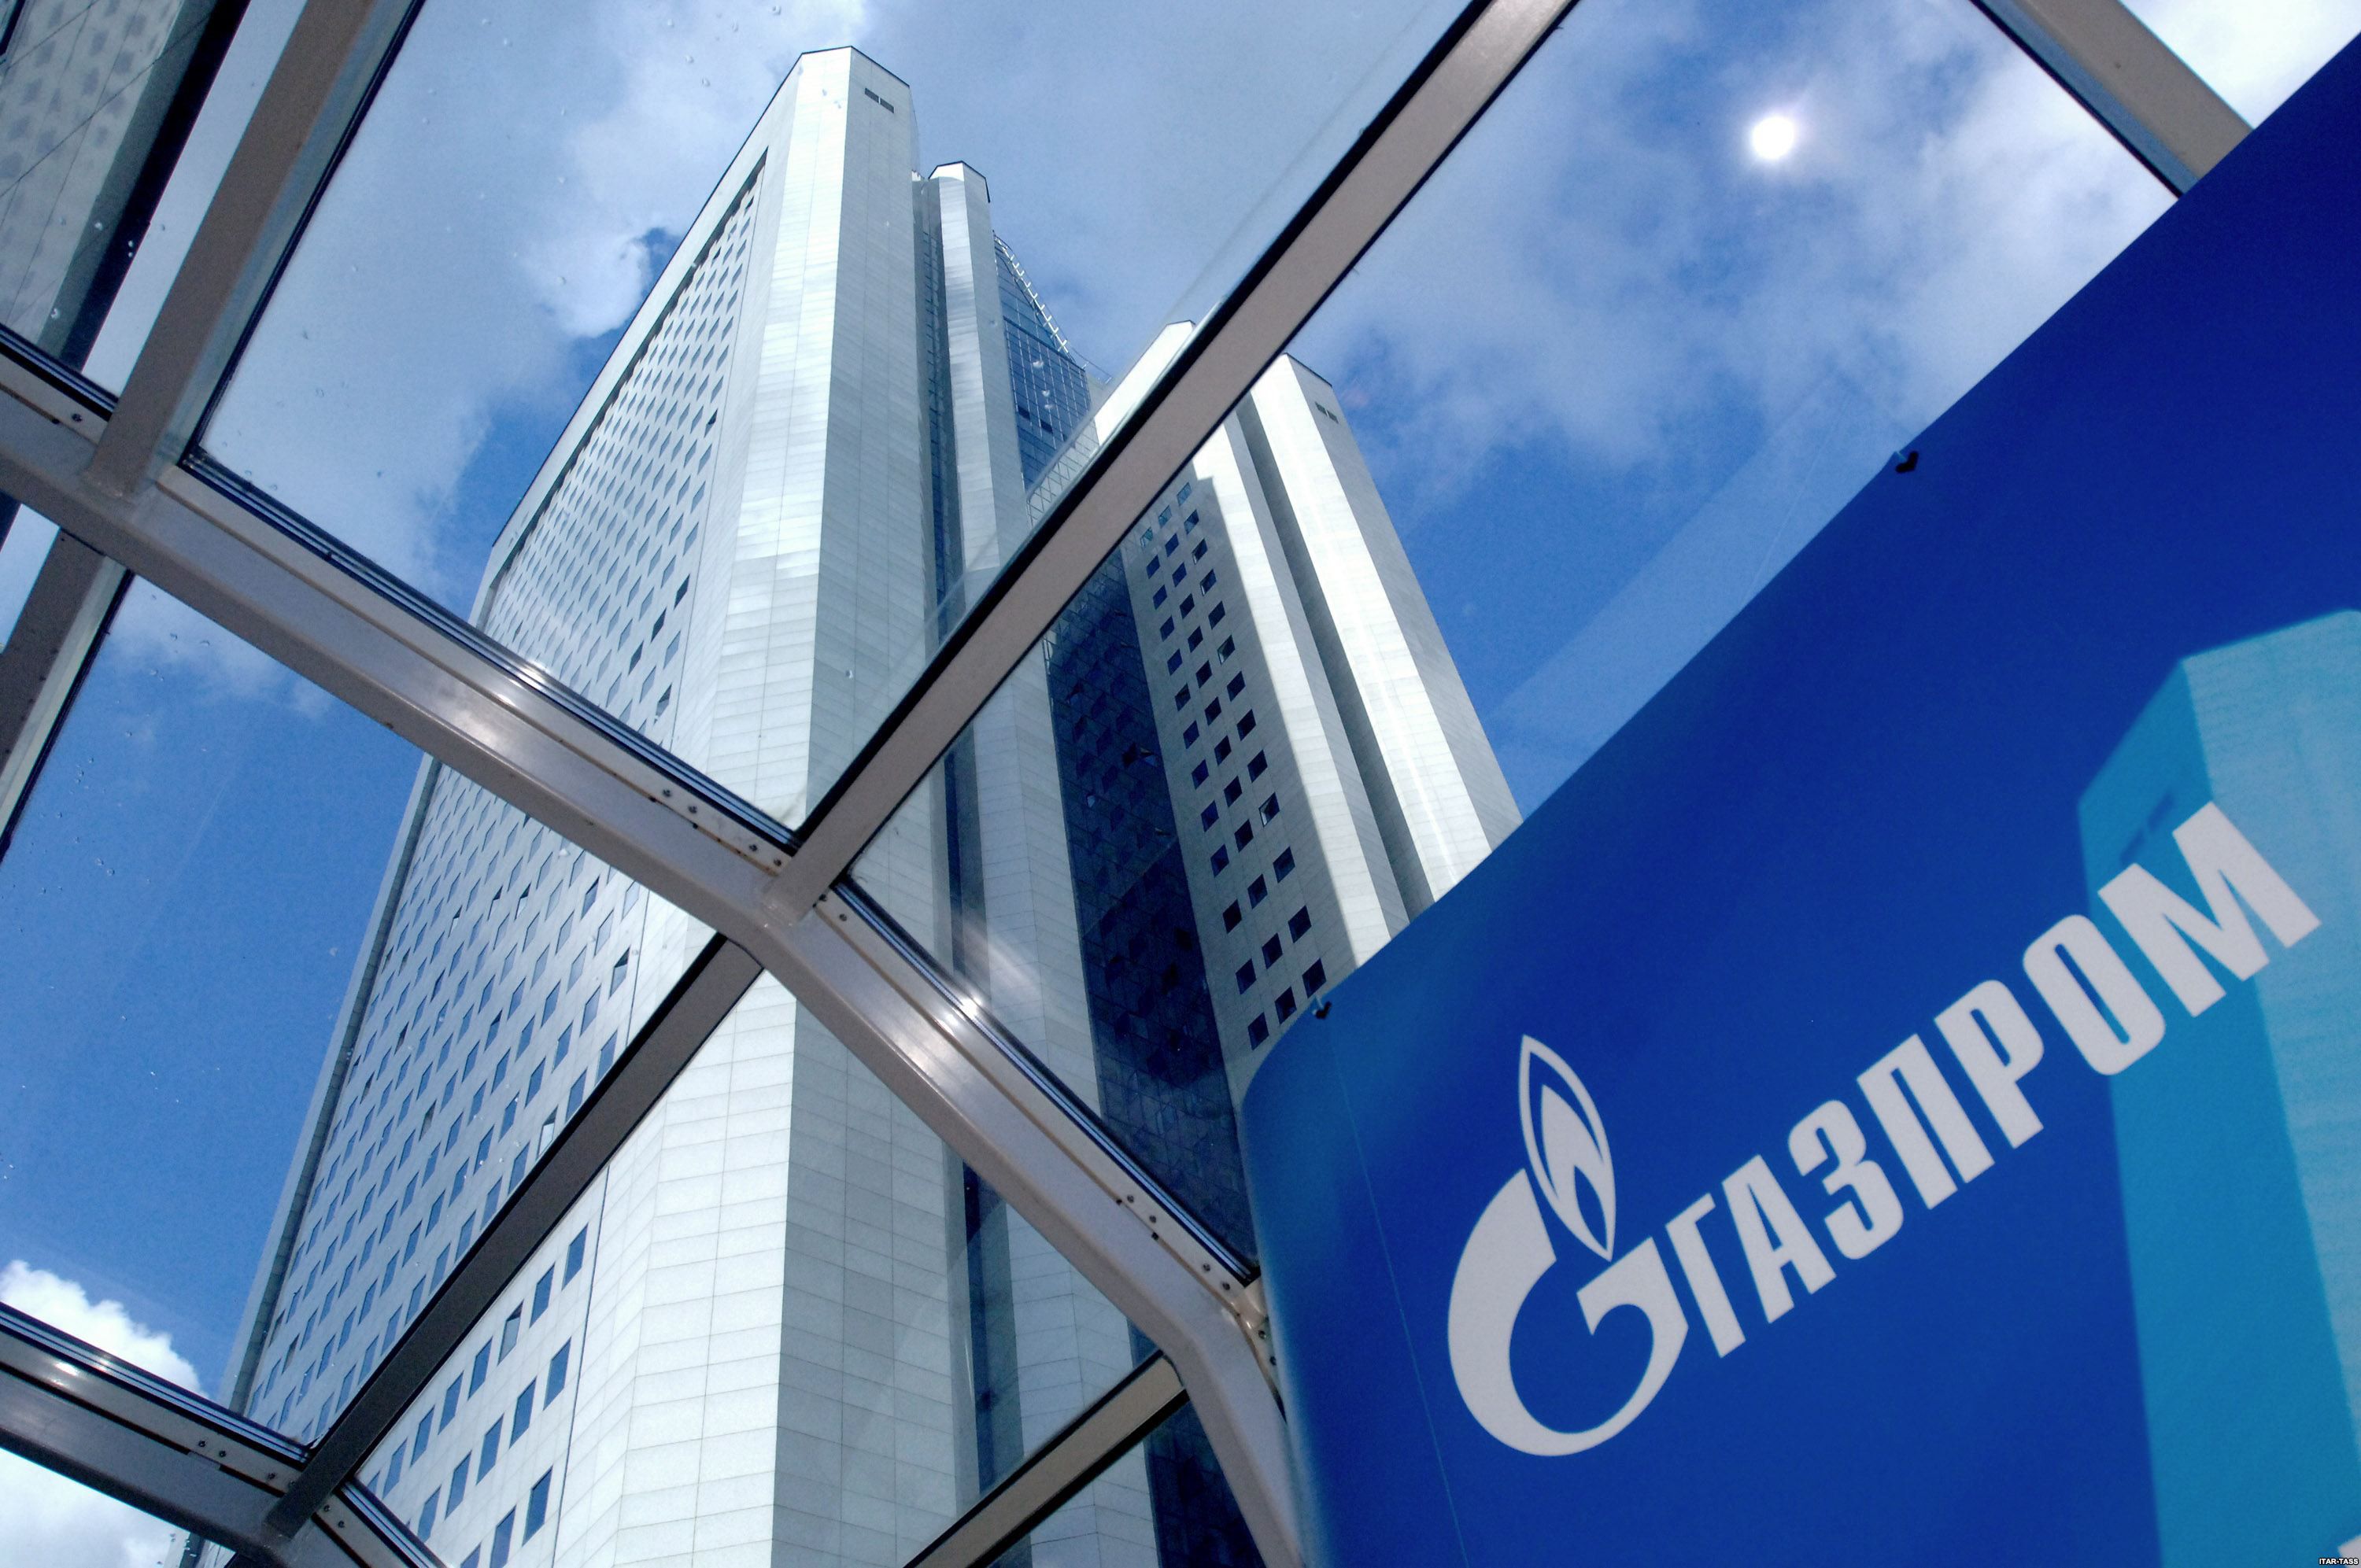 «Газпром» не буде вимагати оплати штрафів за правилом «бери або плати». Принцип «бери-або-плати», залишався каменем спотикання між ВАТ «Газпром» і НАК «Нафтогаз України» в умовах поставок газу, буде призупинено.